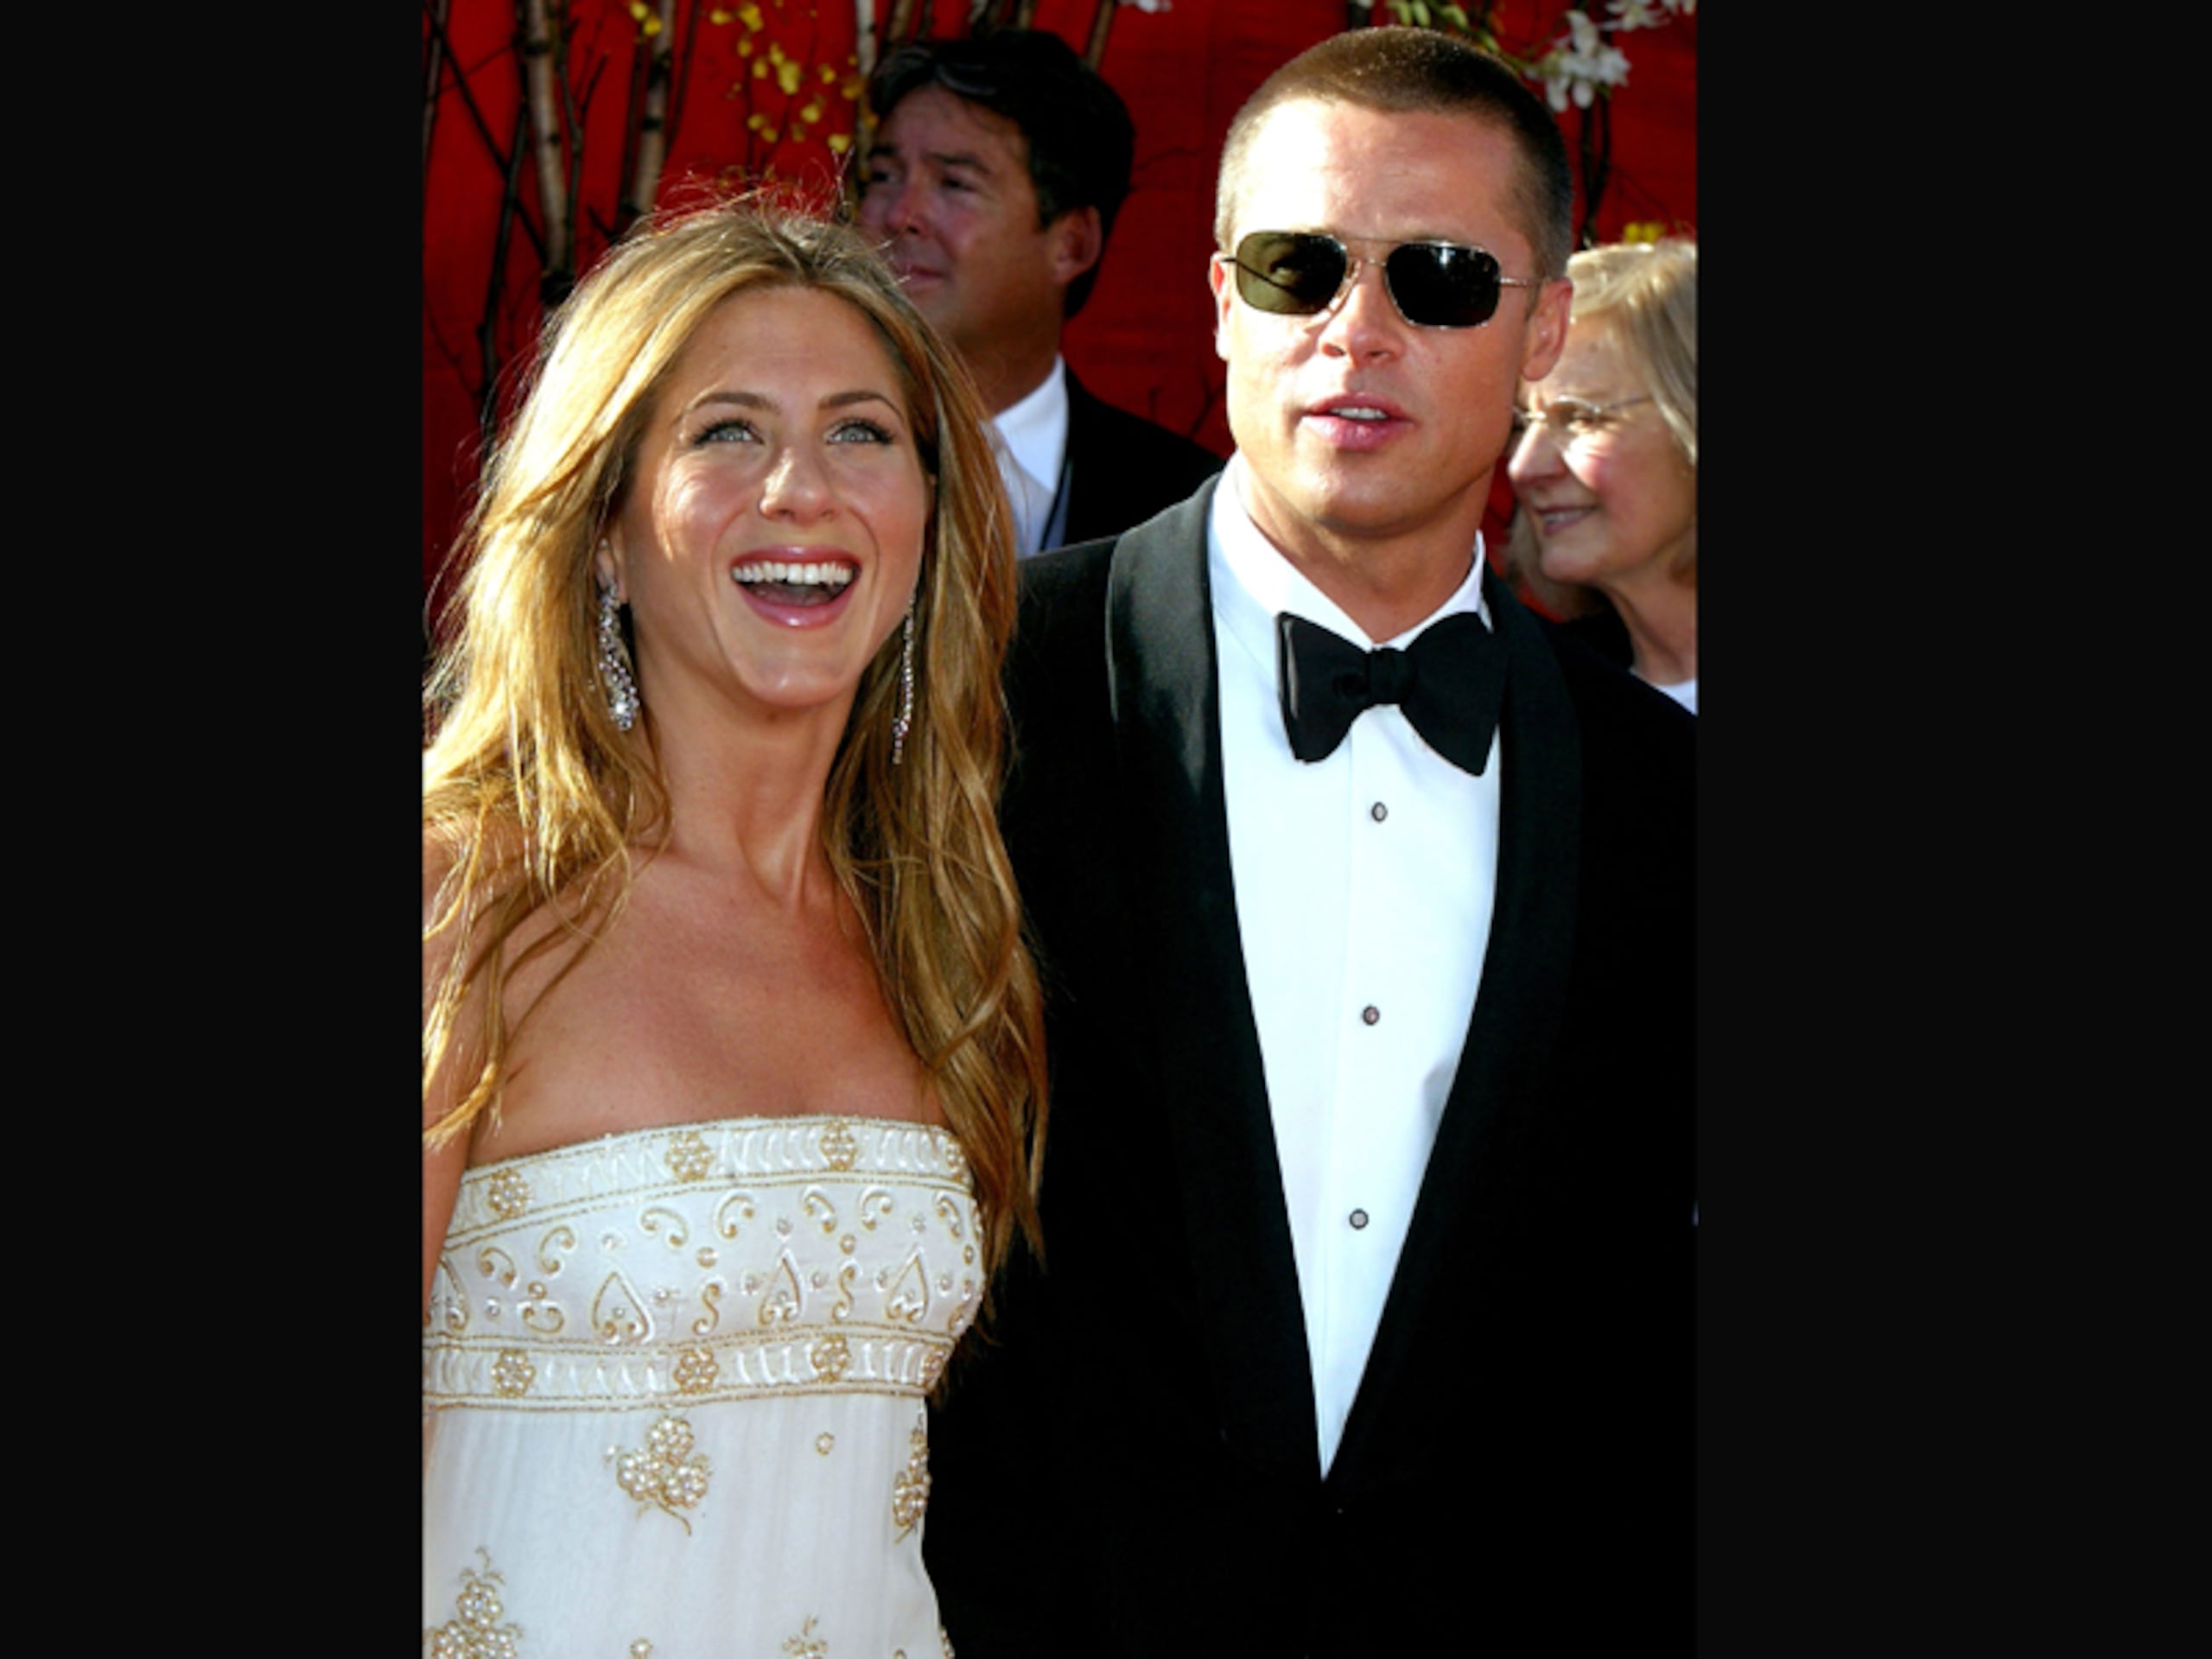 Uno de los escándalos más recordados es sin duda el rompimiento de la pareja dorada de Hollywood, Brad Pitt y Jennifer Aniston, cuando él la engañó con Angelina Jolie. (Archivo)